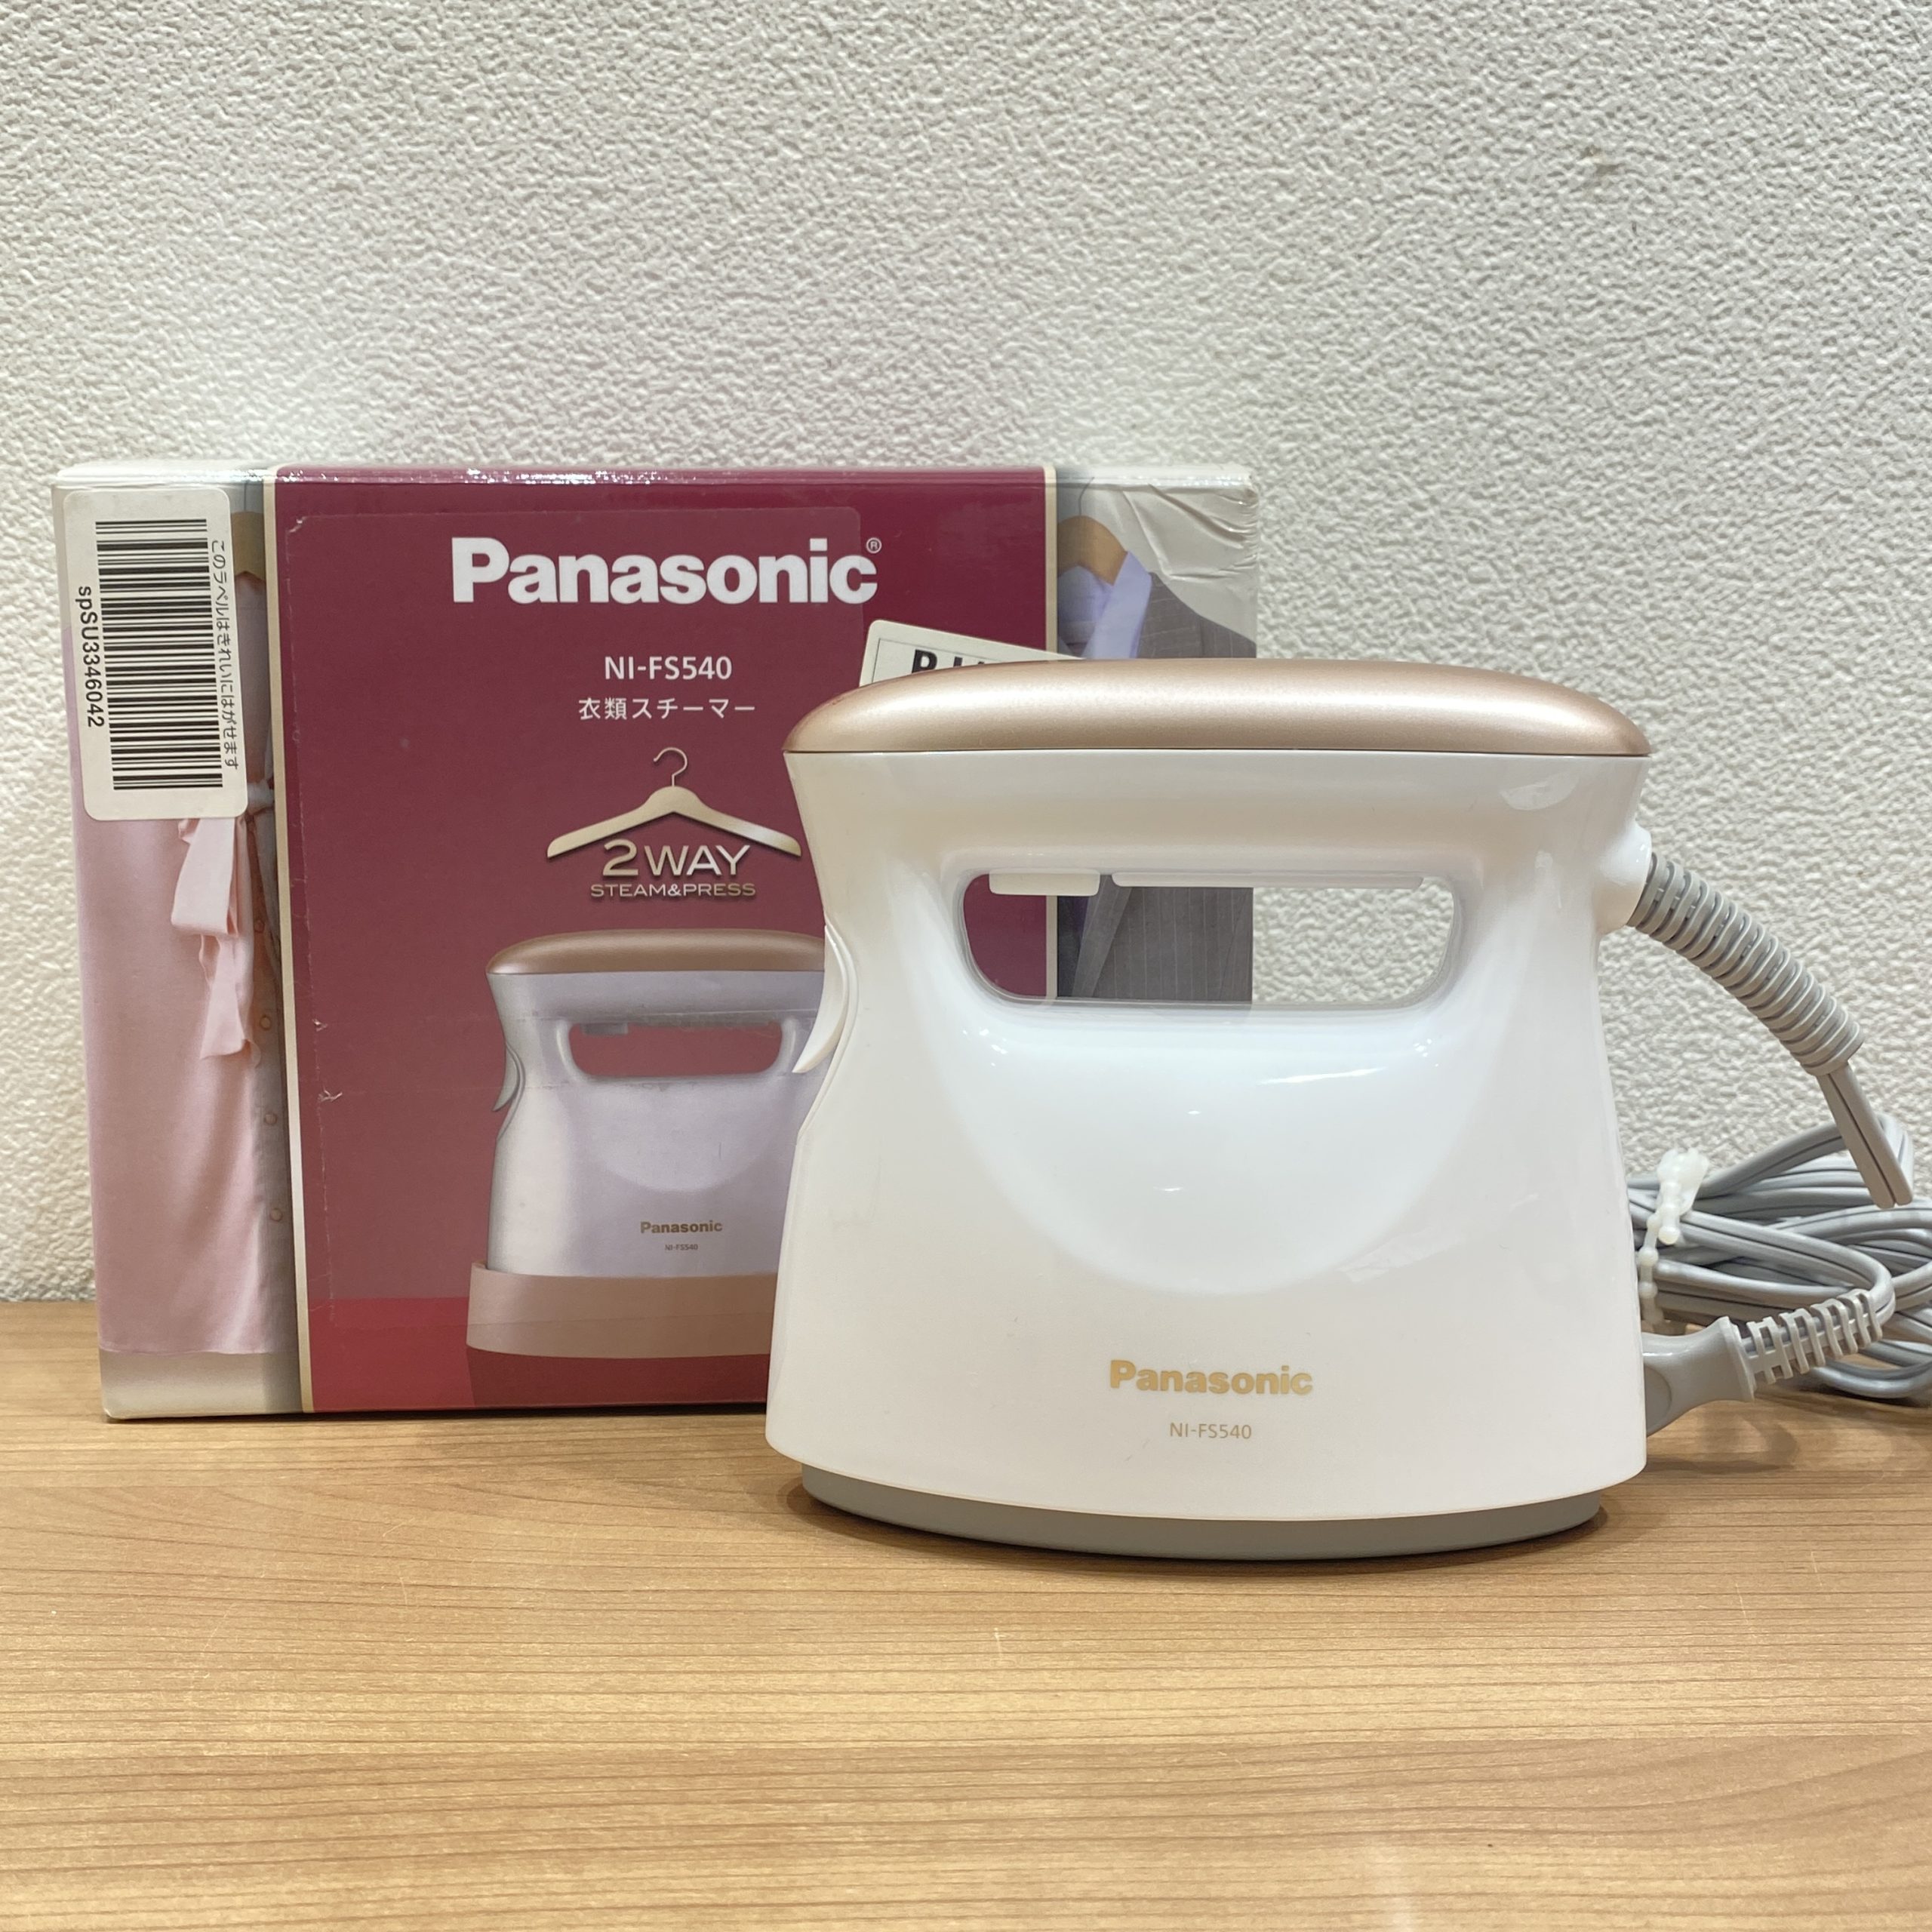 【Panasonic/パナソニック】衣類スチーマー NI-FS540 ピンクゴールド調 2WAY スチーム/プレス